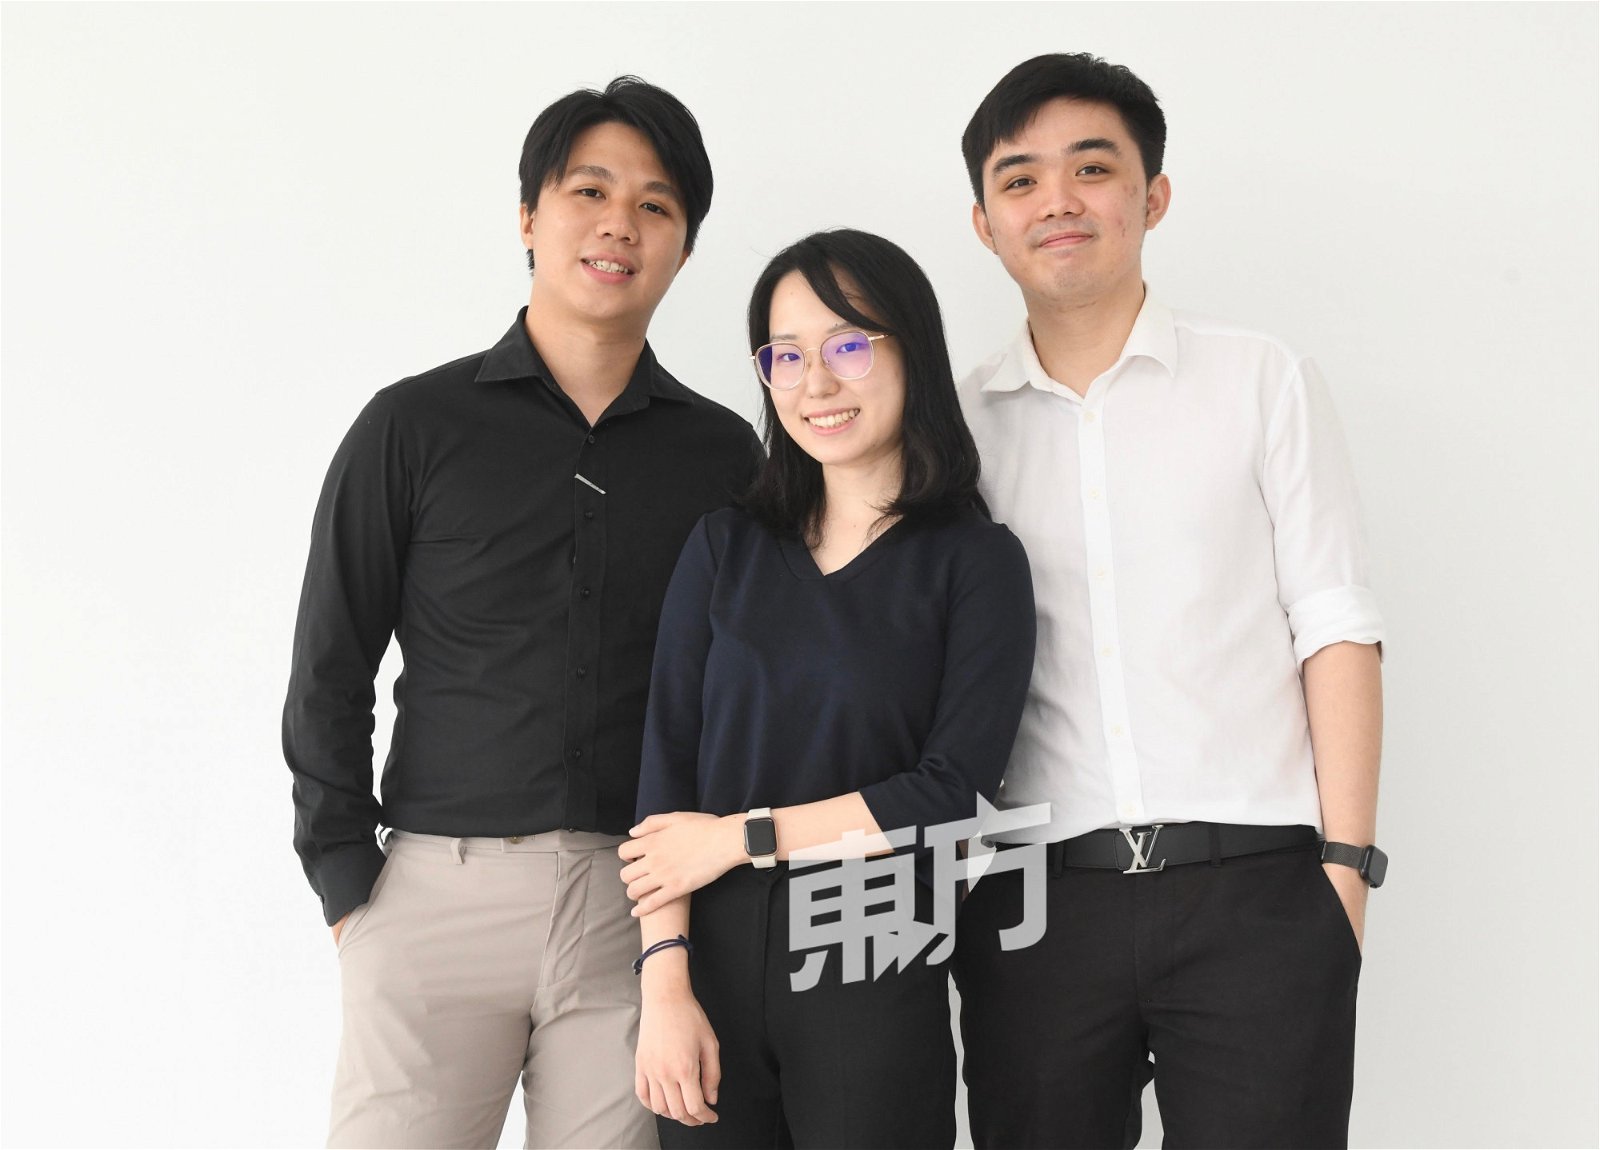 潘囯斌（右）和洪明源（左）是在跨共公司当科技人员，而崔铉智则是会计师。三人看好这个市场，放弃自己的高薪专业开创情趣用品品牌。